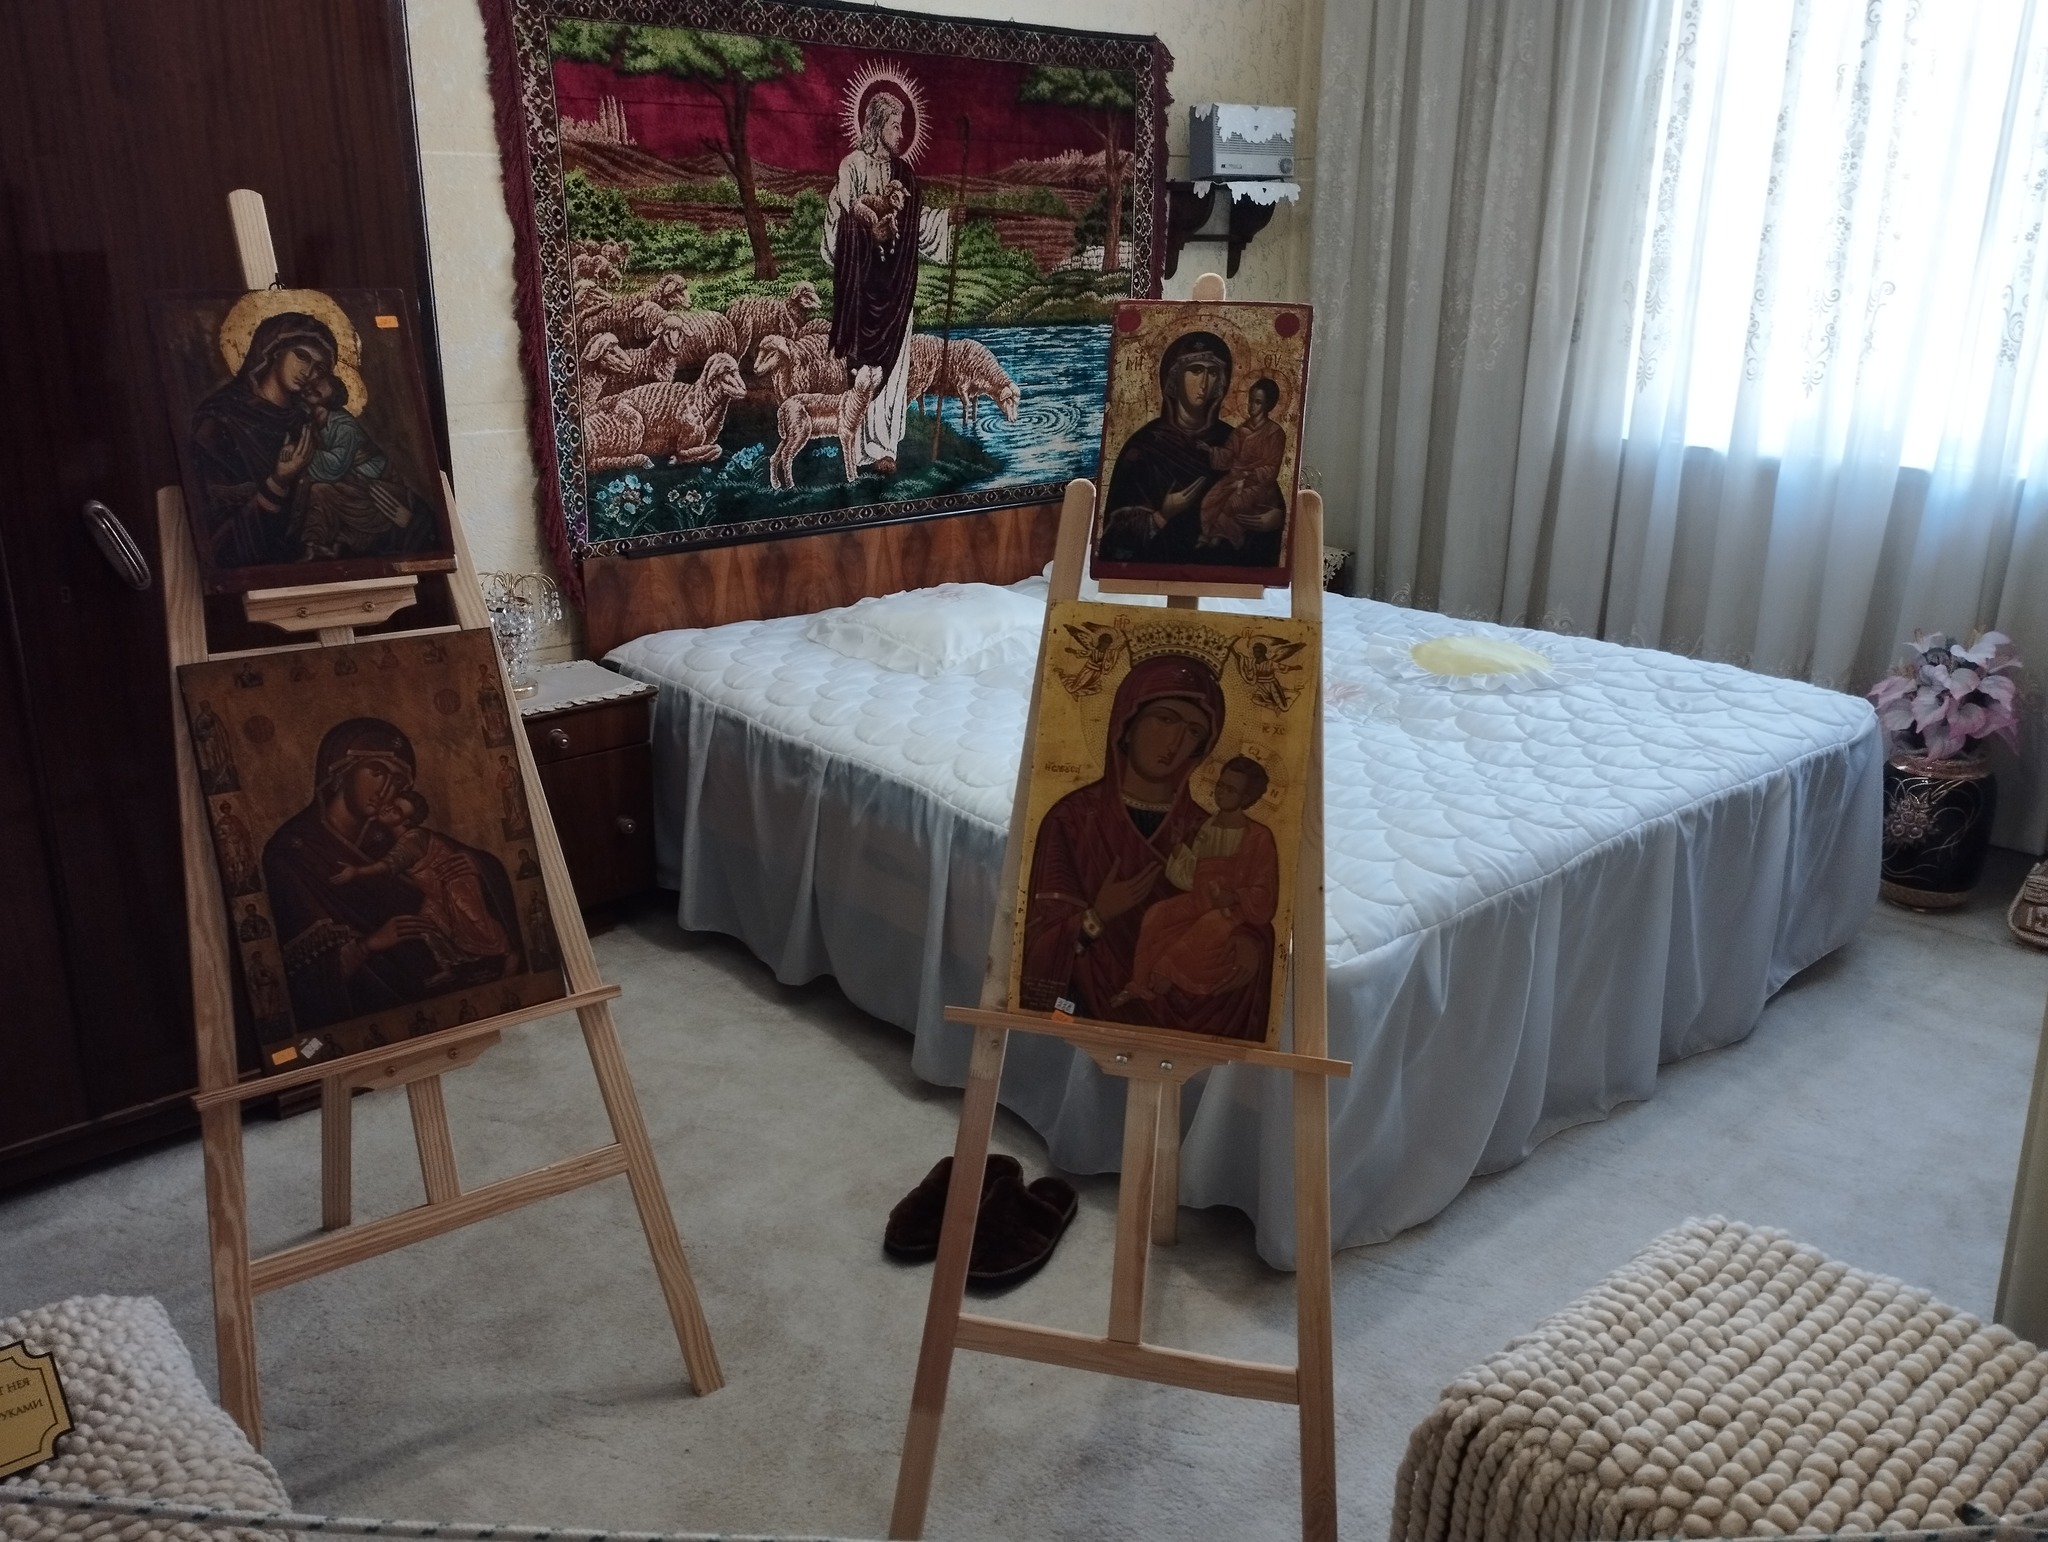  Спалнята на пророчицата, където бяха подредени иконите й.